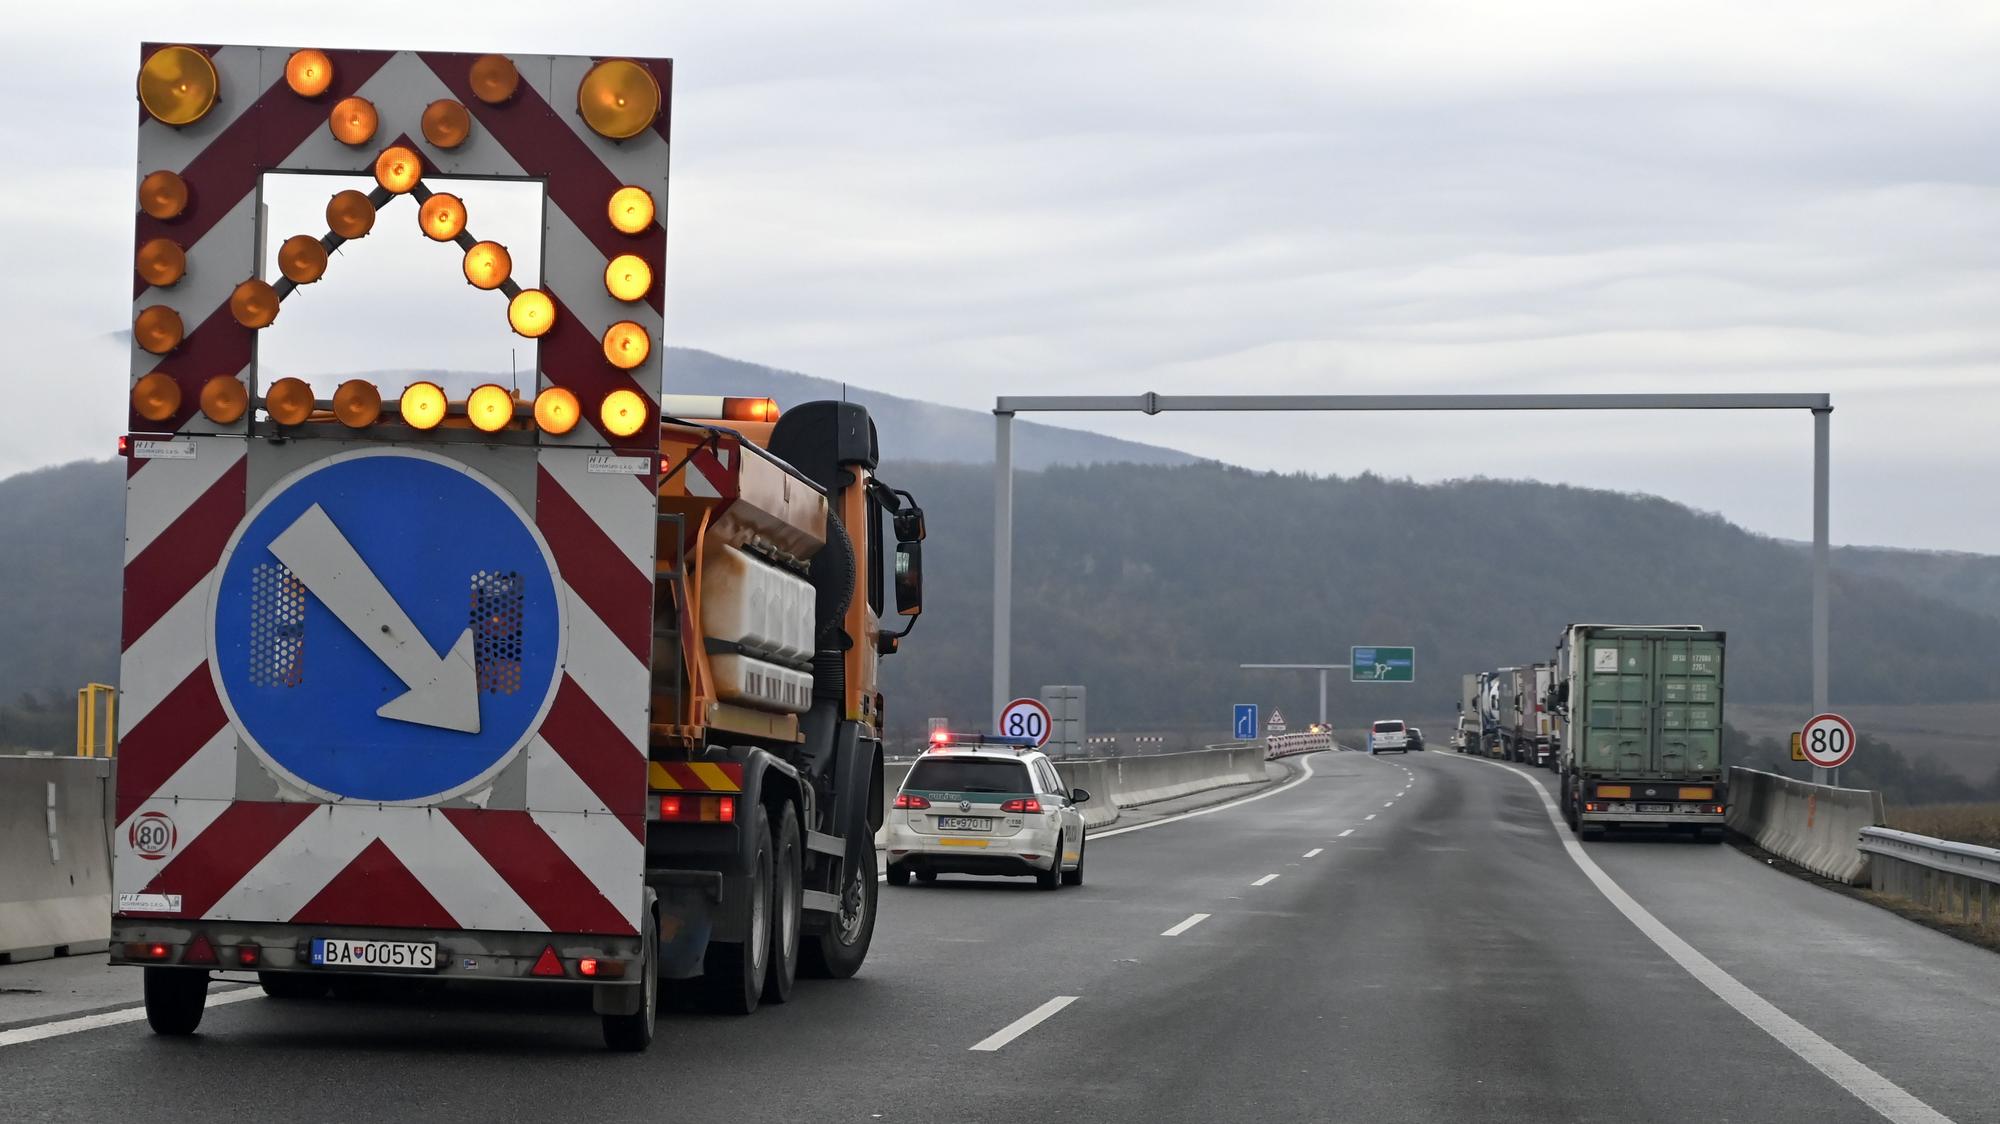 Kierowcy, ważna wiadomość: Słowacki Związek Kierowców Ciężarówek podjął decyzję o zablokowaniu ruchliwego przejścia granicznego